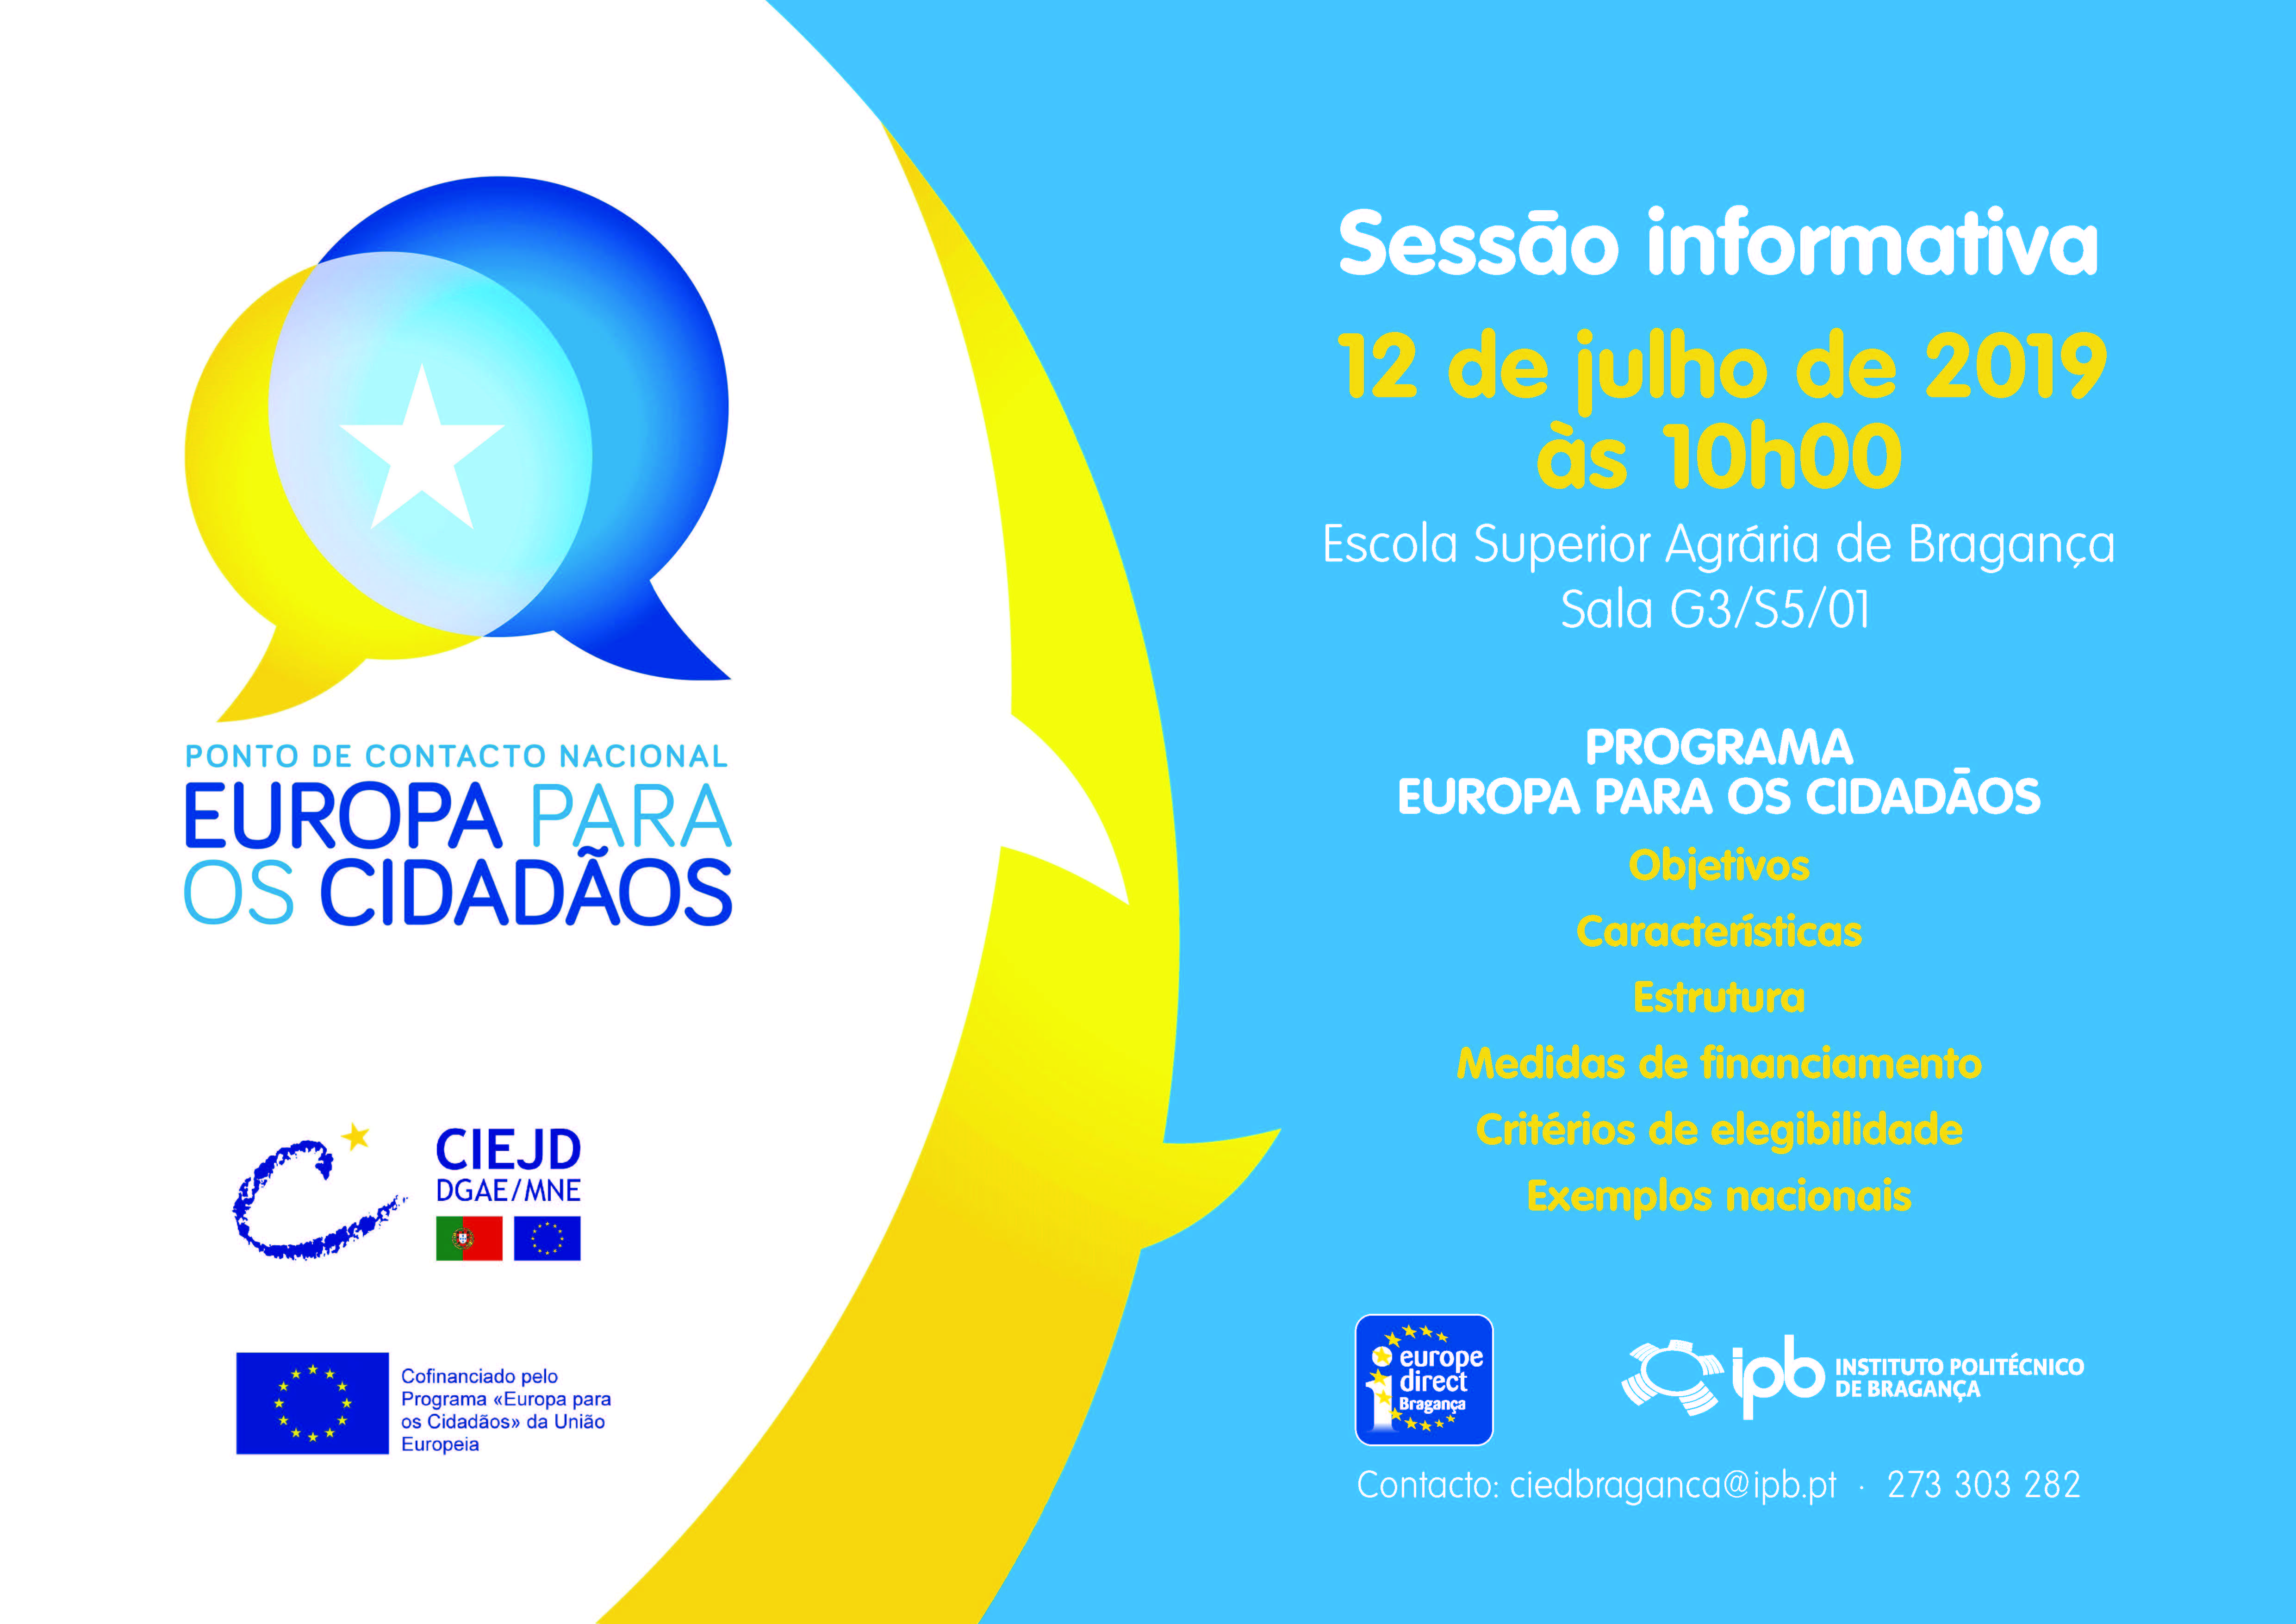 Sessão Informativa:.Programa “Europa para os Cidadãos” – 12 de julho de 2019 – sala G5/S3/01 – Escola Superior Agrária